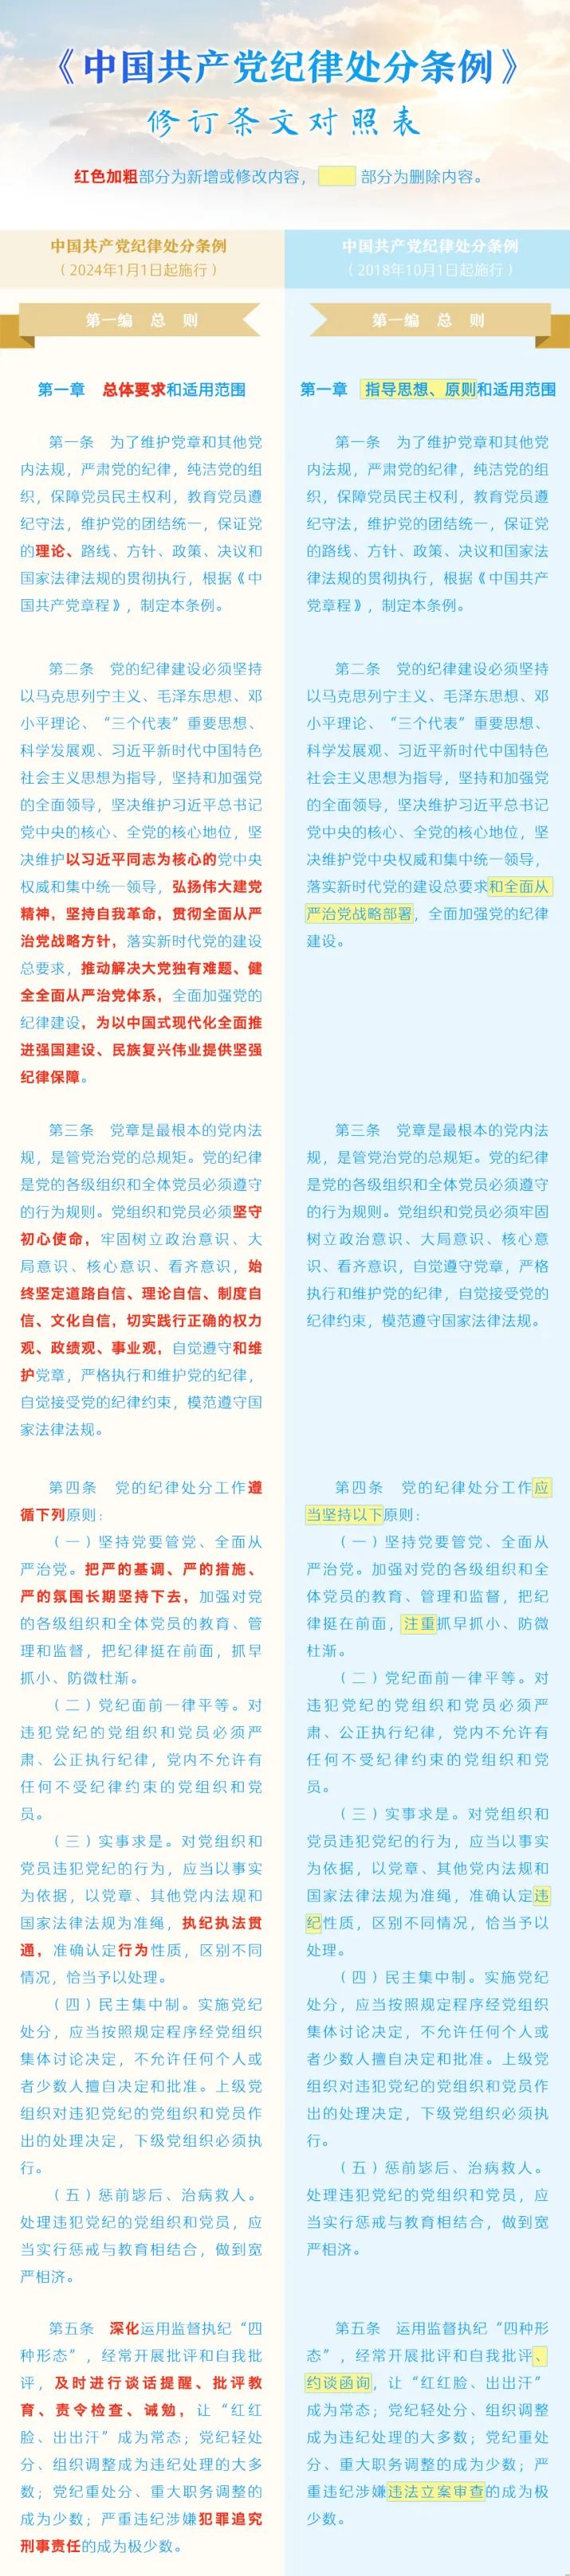 【学习园地】《中国共产党纪律处分条例》修订条文对照表